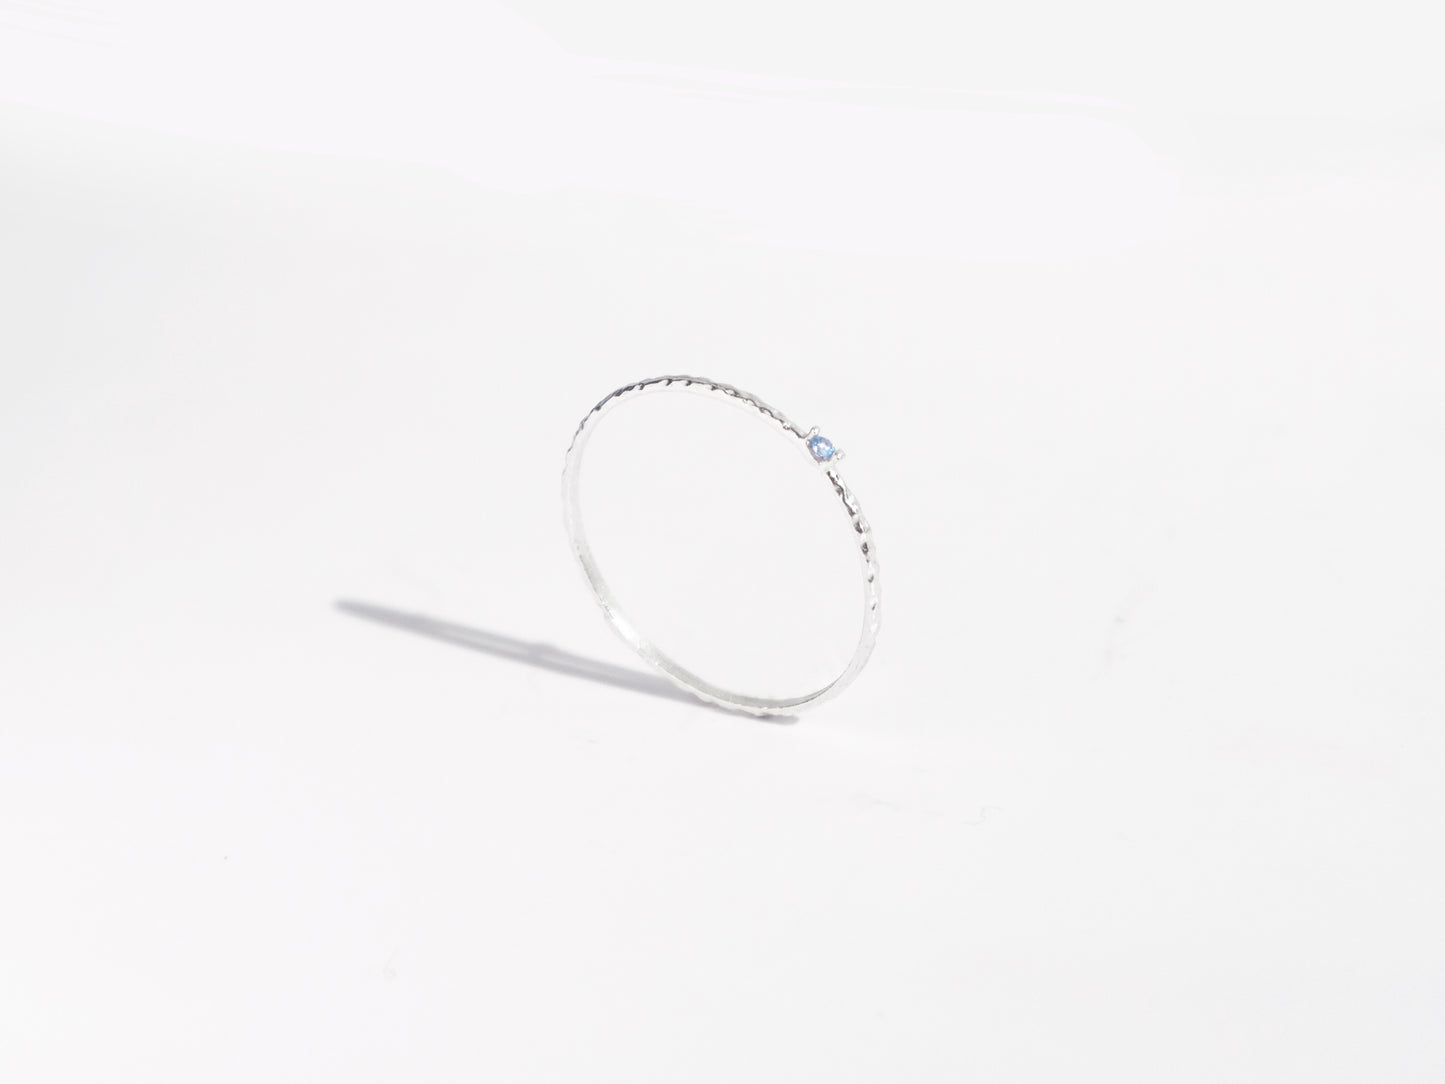 Mini 鋯石戒指 | 淺海藍